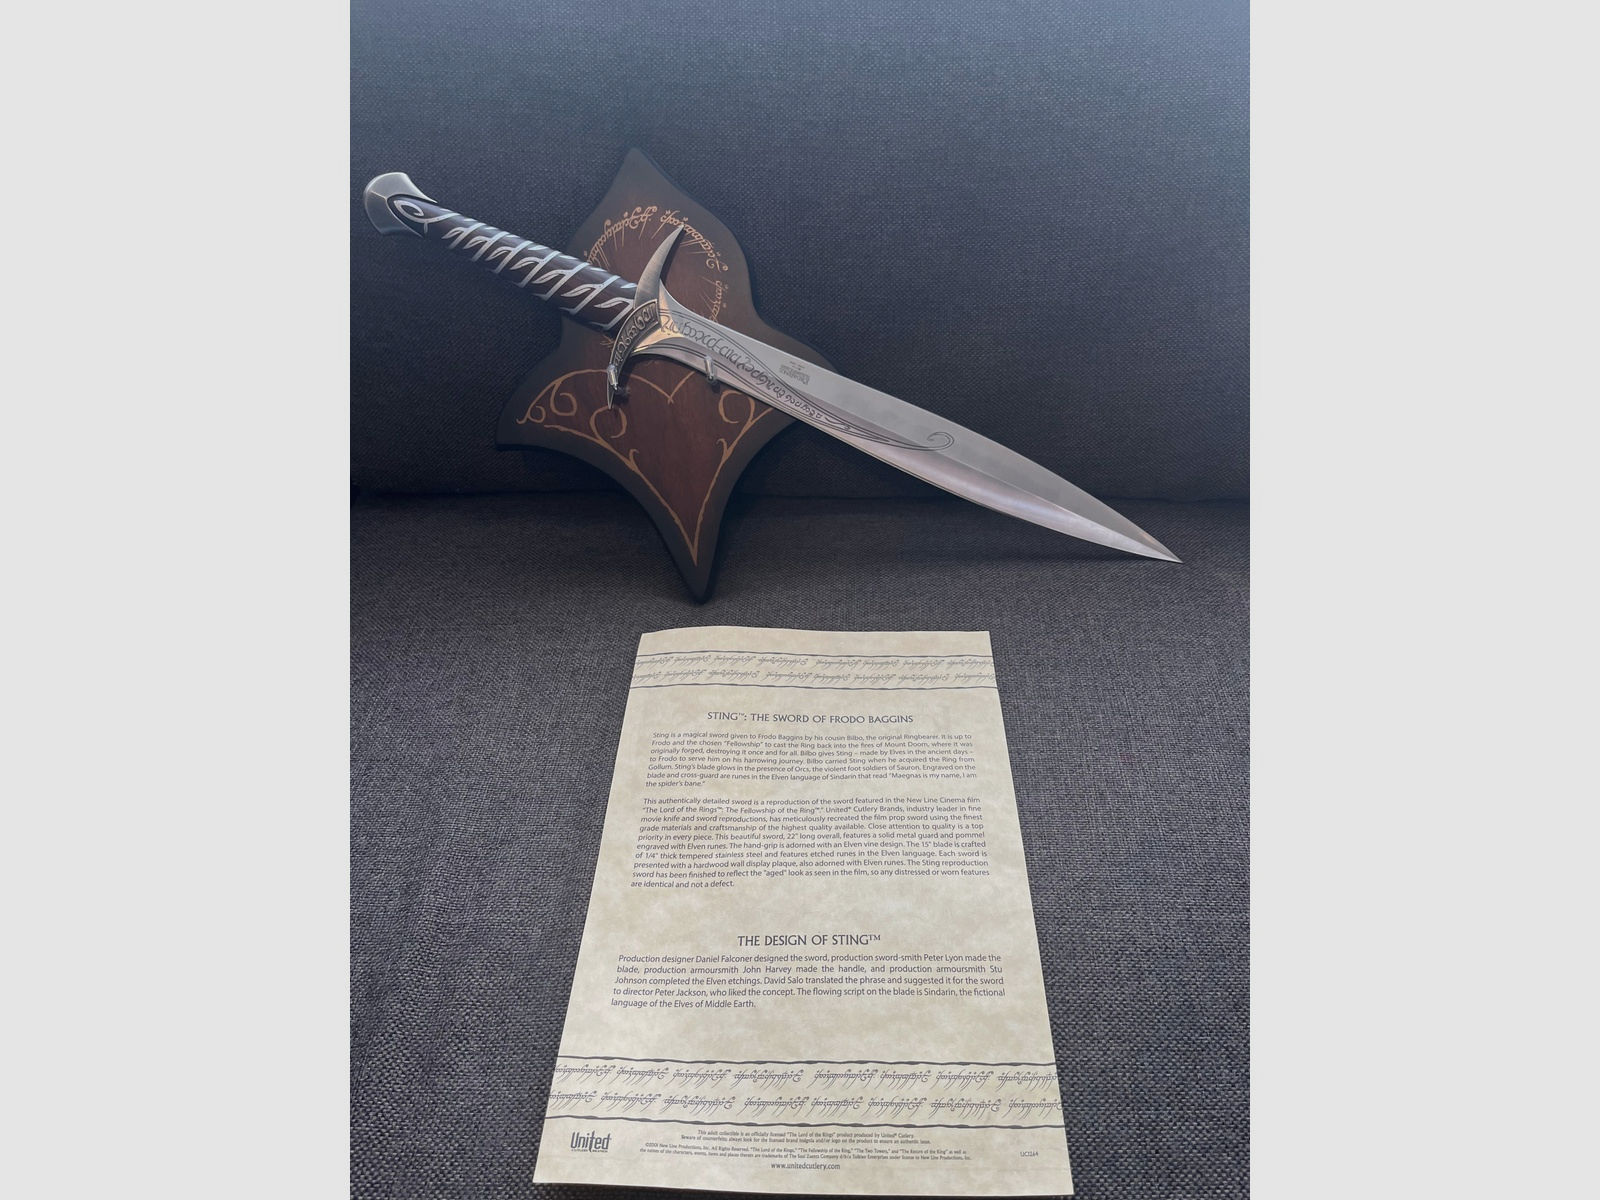 Herr der Ringe Schwert “Stich” das Schwert Frodo Beutlins